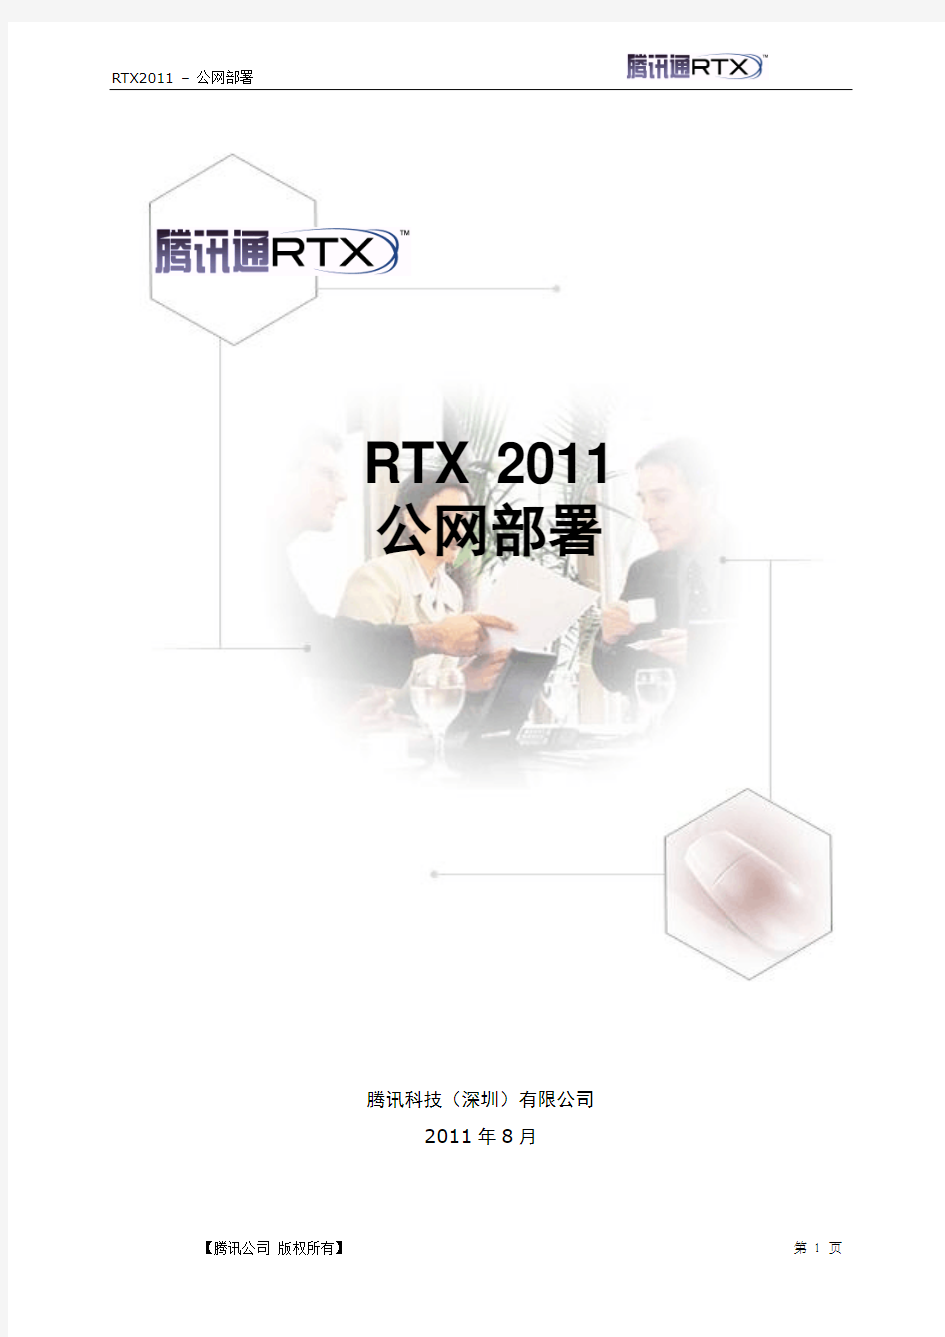 RTX腾讯通公网部署手册